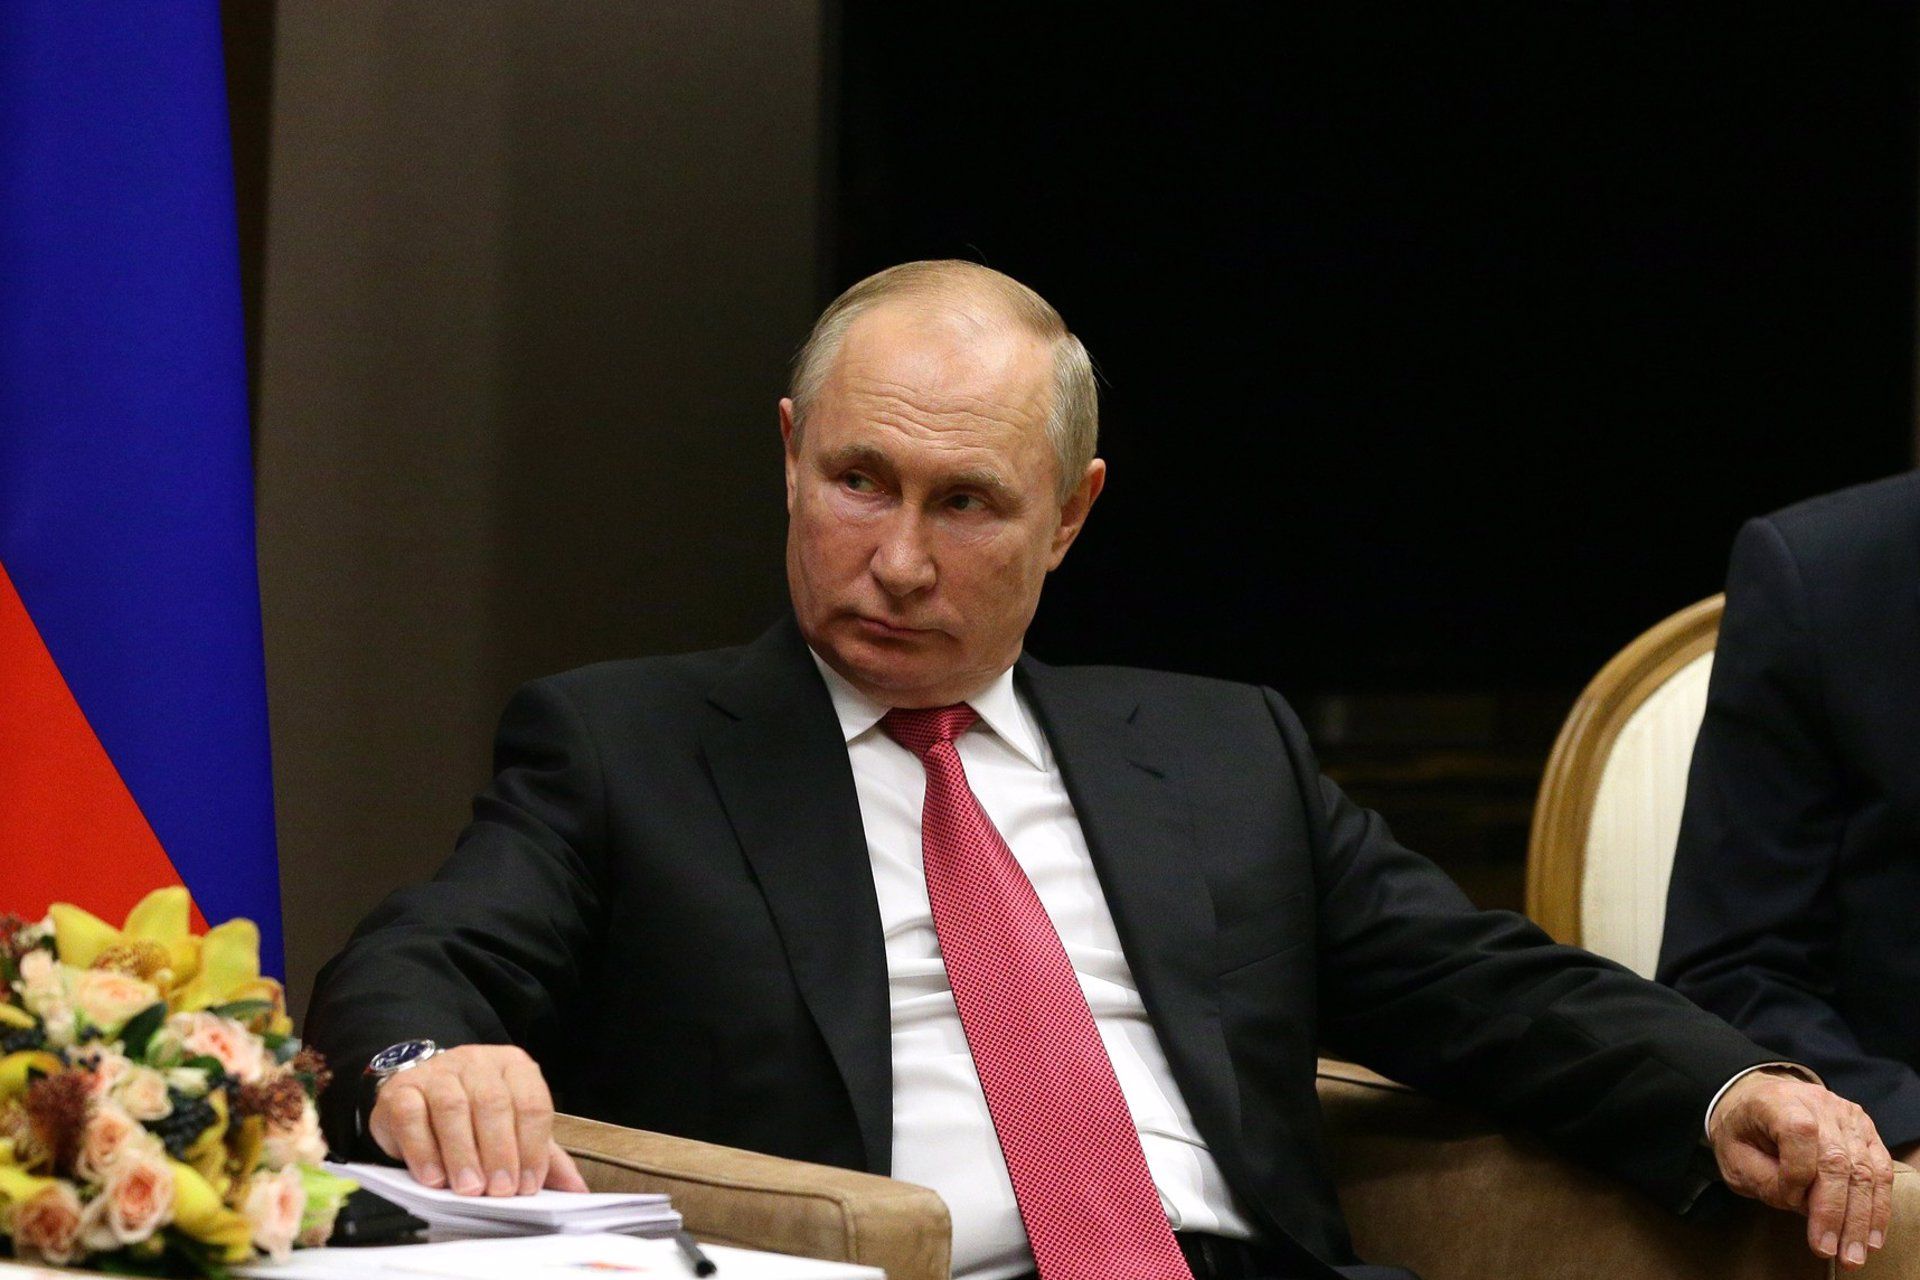 El manadatario ruso Vladimir Putin no viajará a la COP26 / Foto: EP